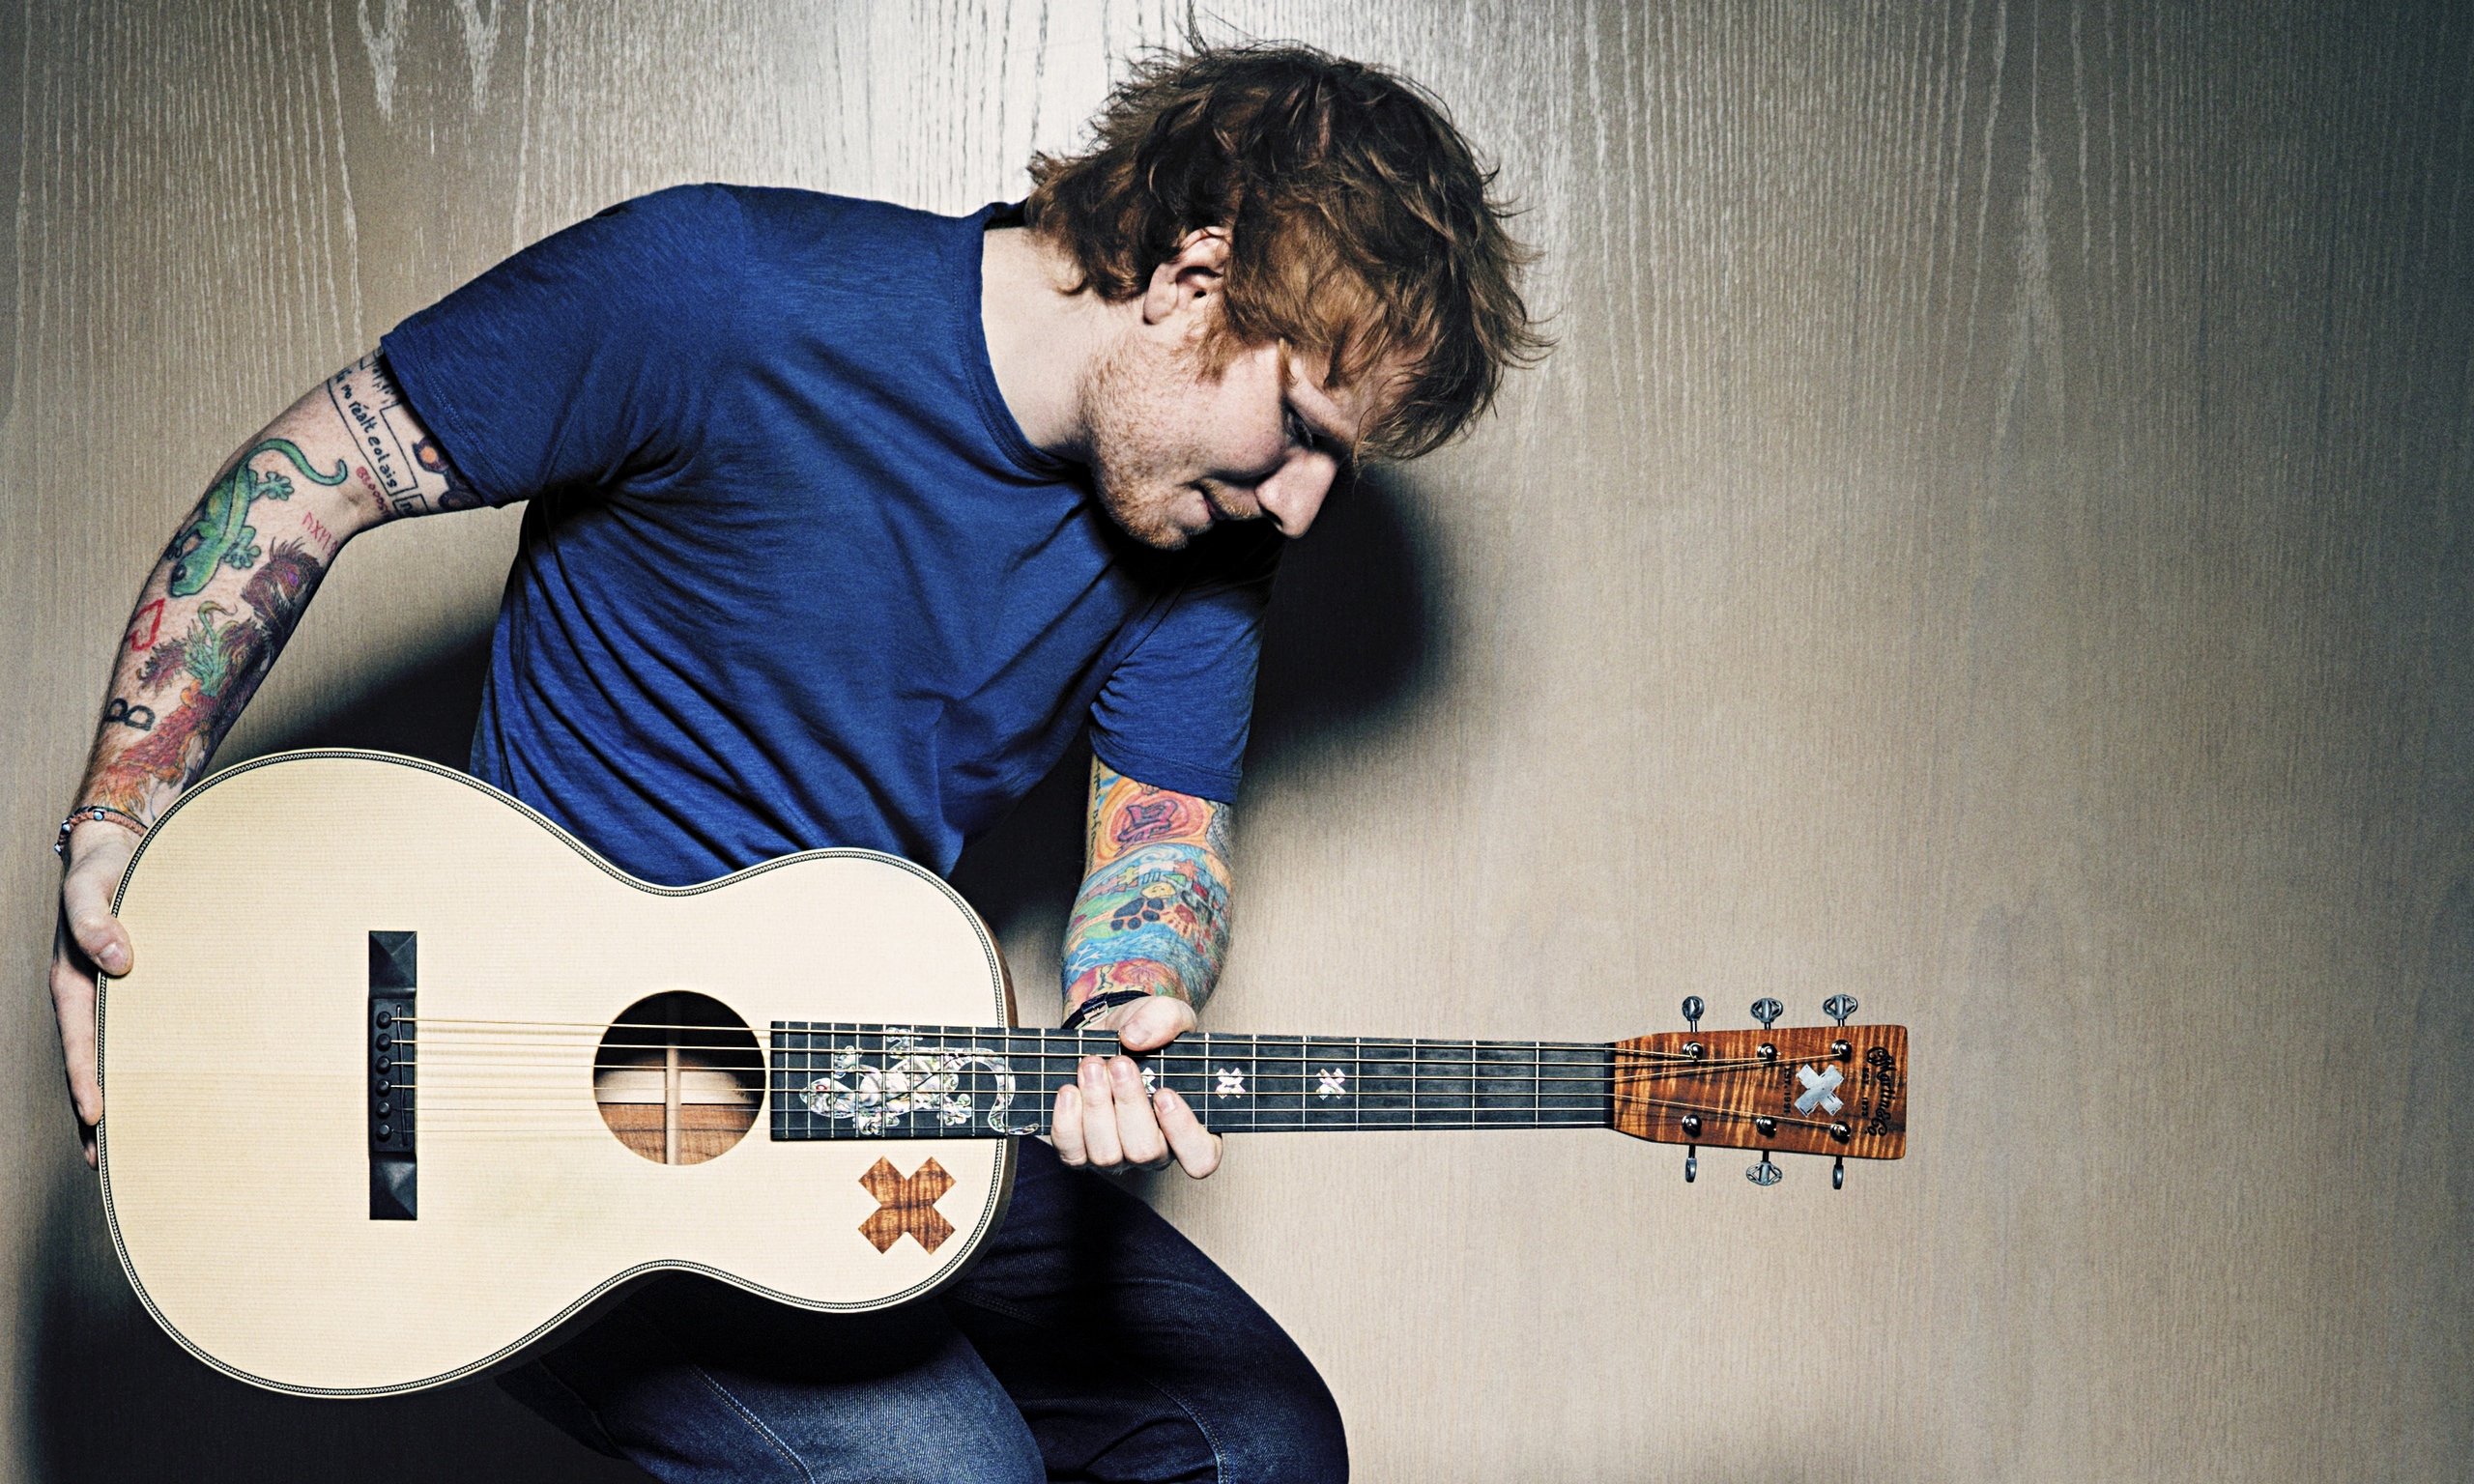 ed, Sheeran, Pop, R b, Folk, Hip, Hop, Acoustic, Singer, Indie, 1sheeran, Guitar Wallpaper